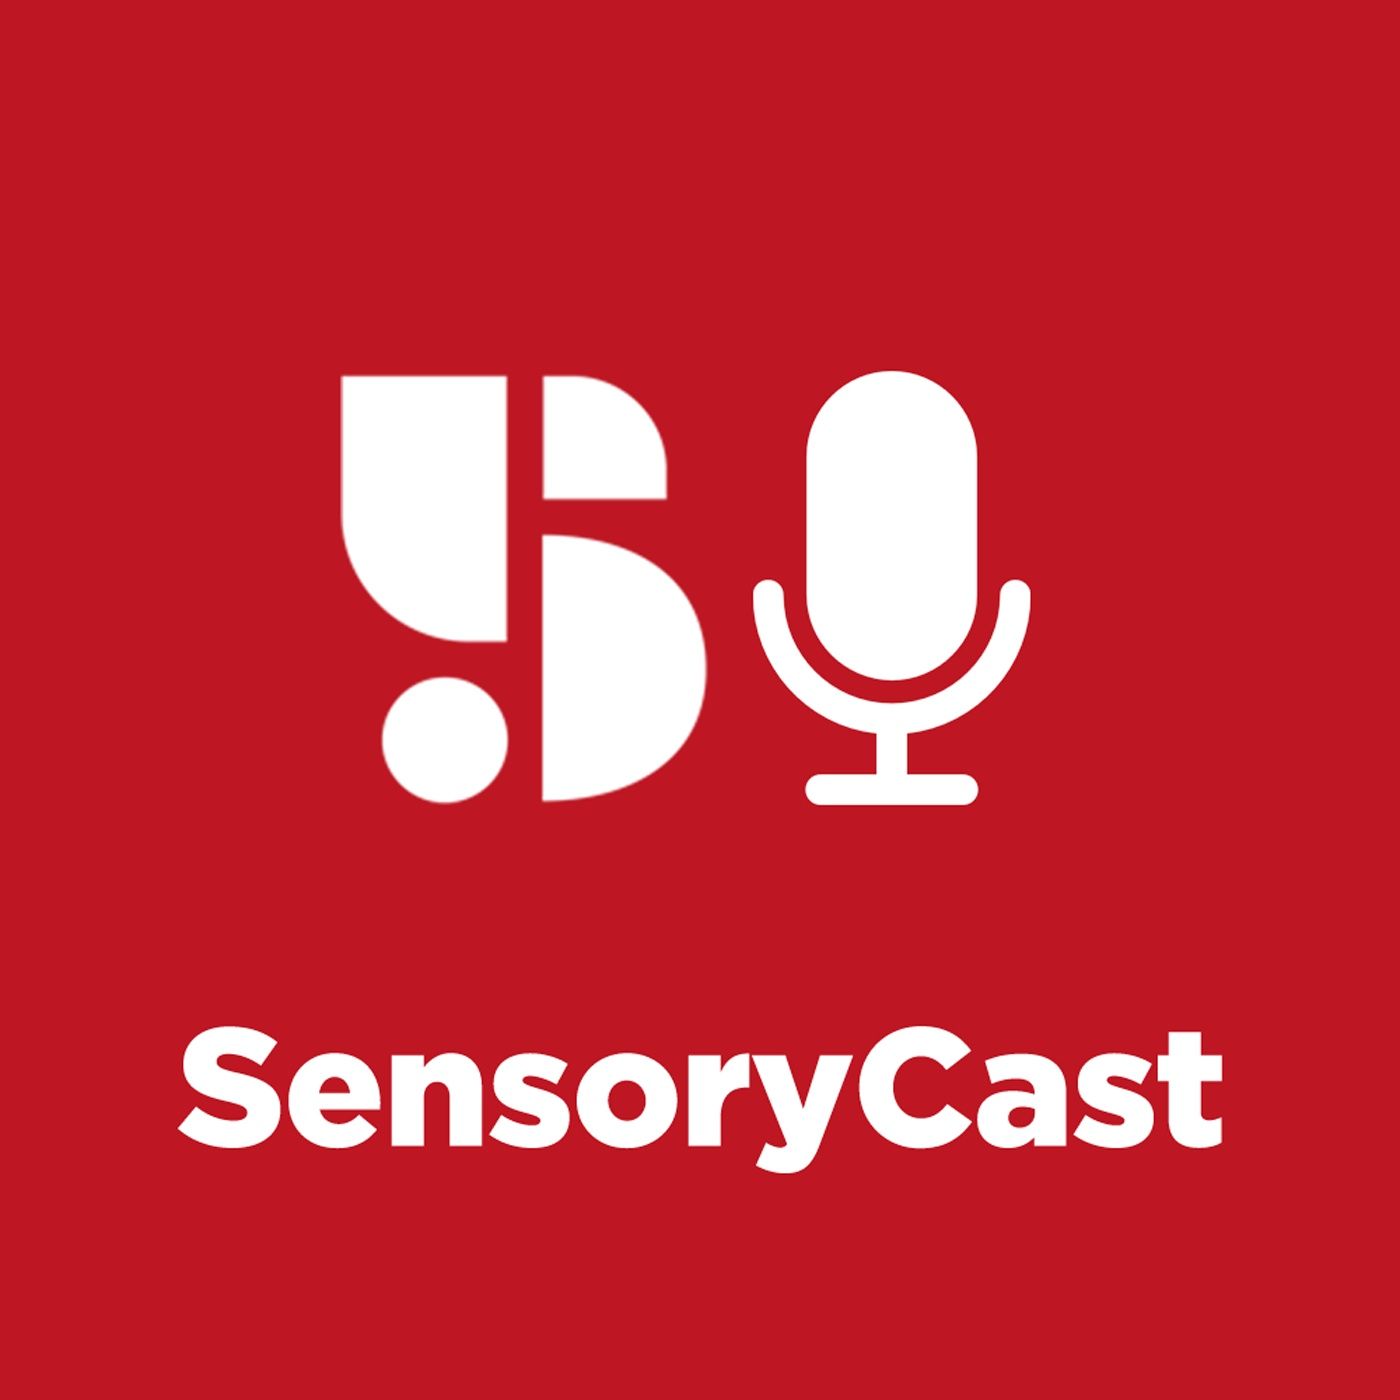 SensoryCast 03 - Que cheiro lembra a sua vida?